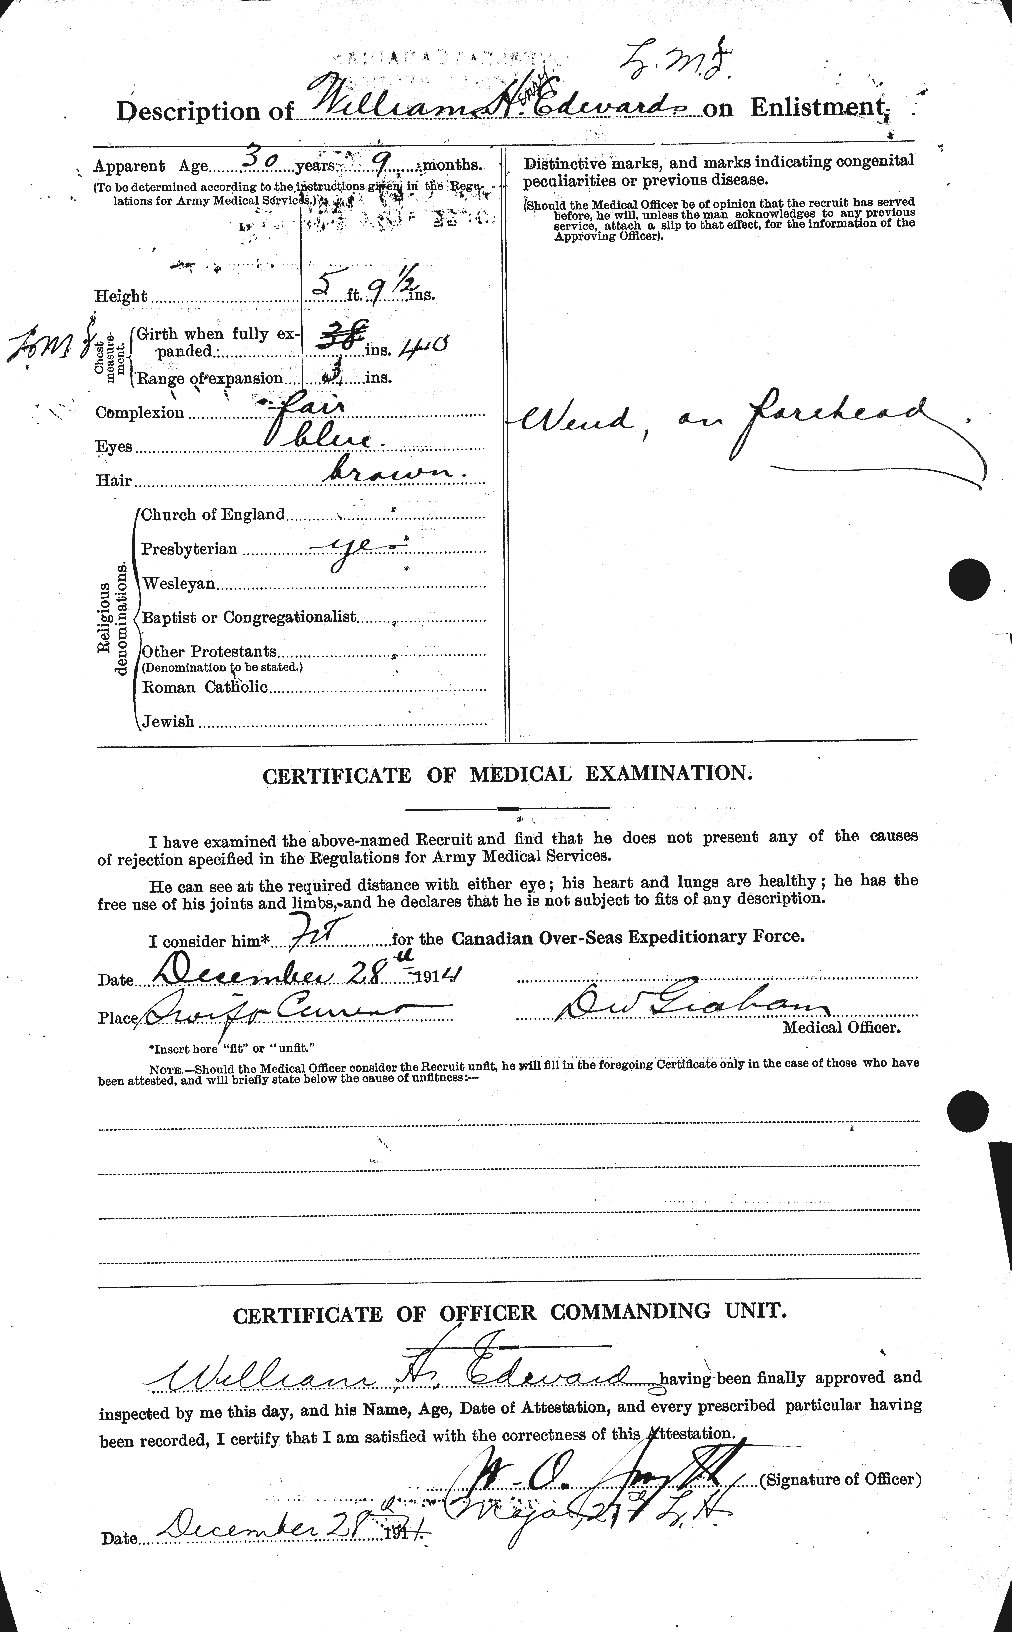 Dossiers du Personnel de la Première Guerre mondiale - CEC 310435b